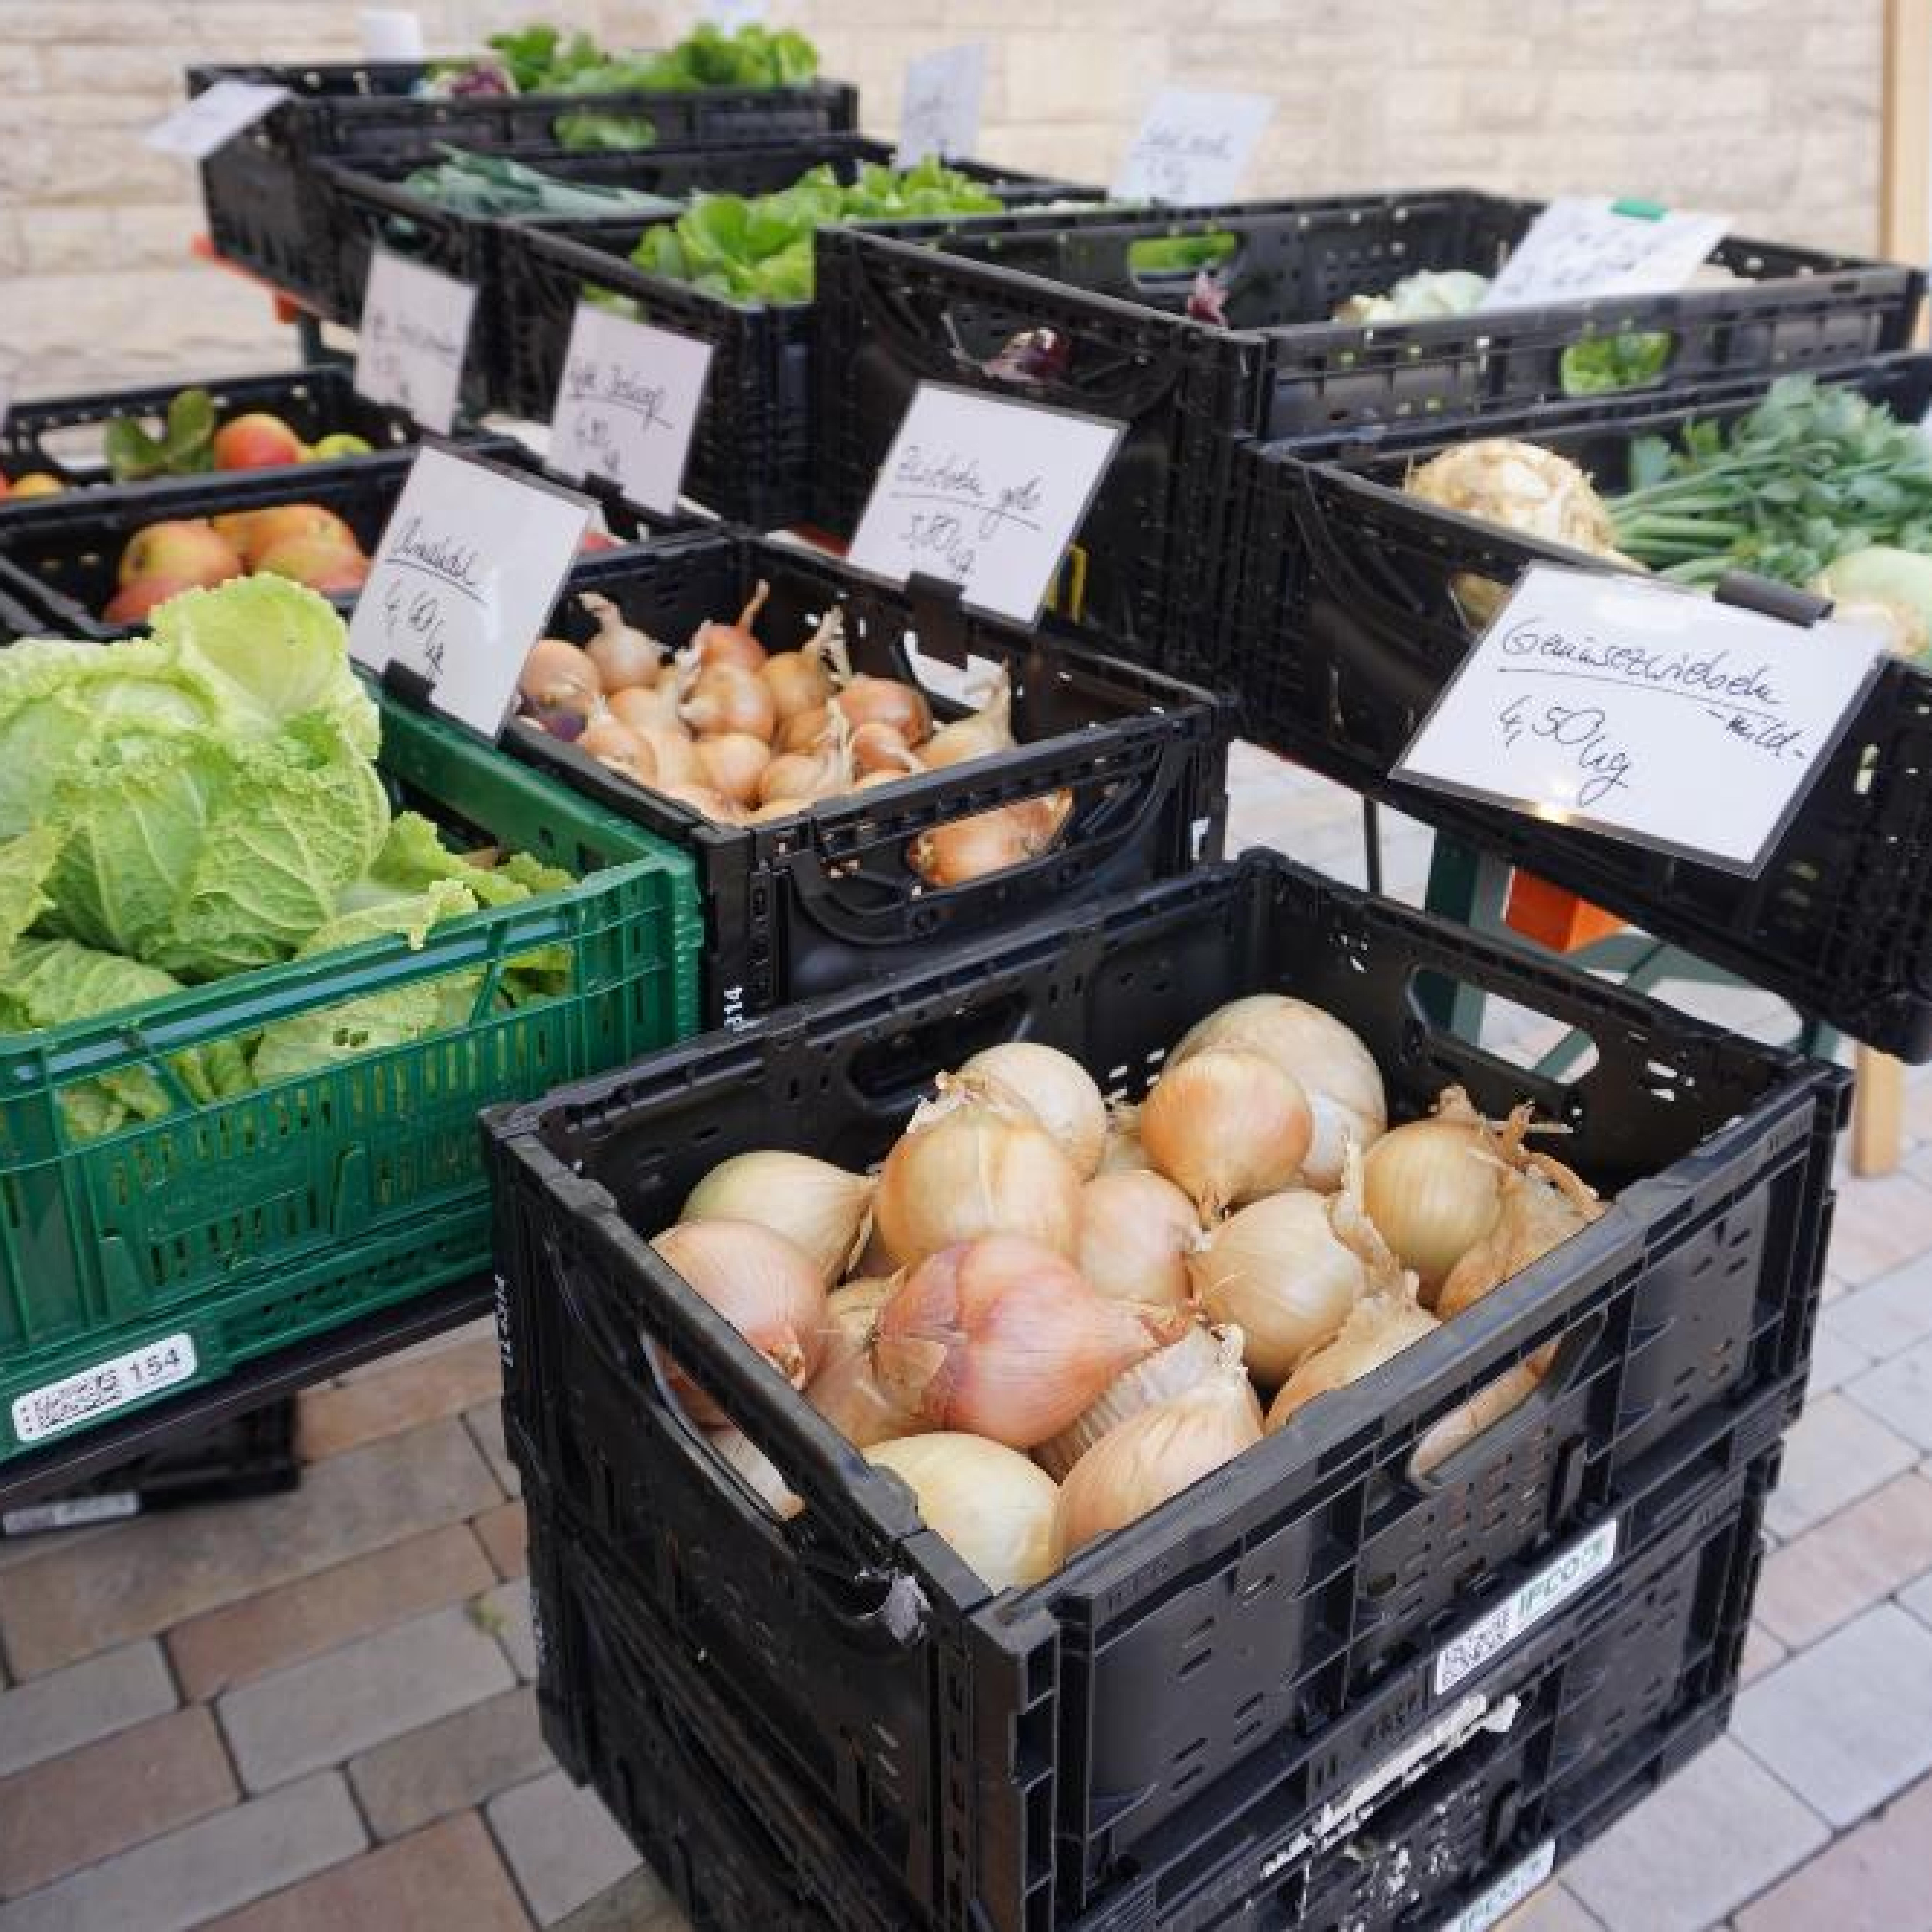 Gemüse an einem Marktstand